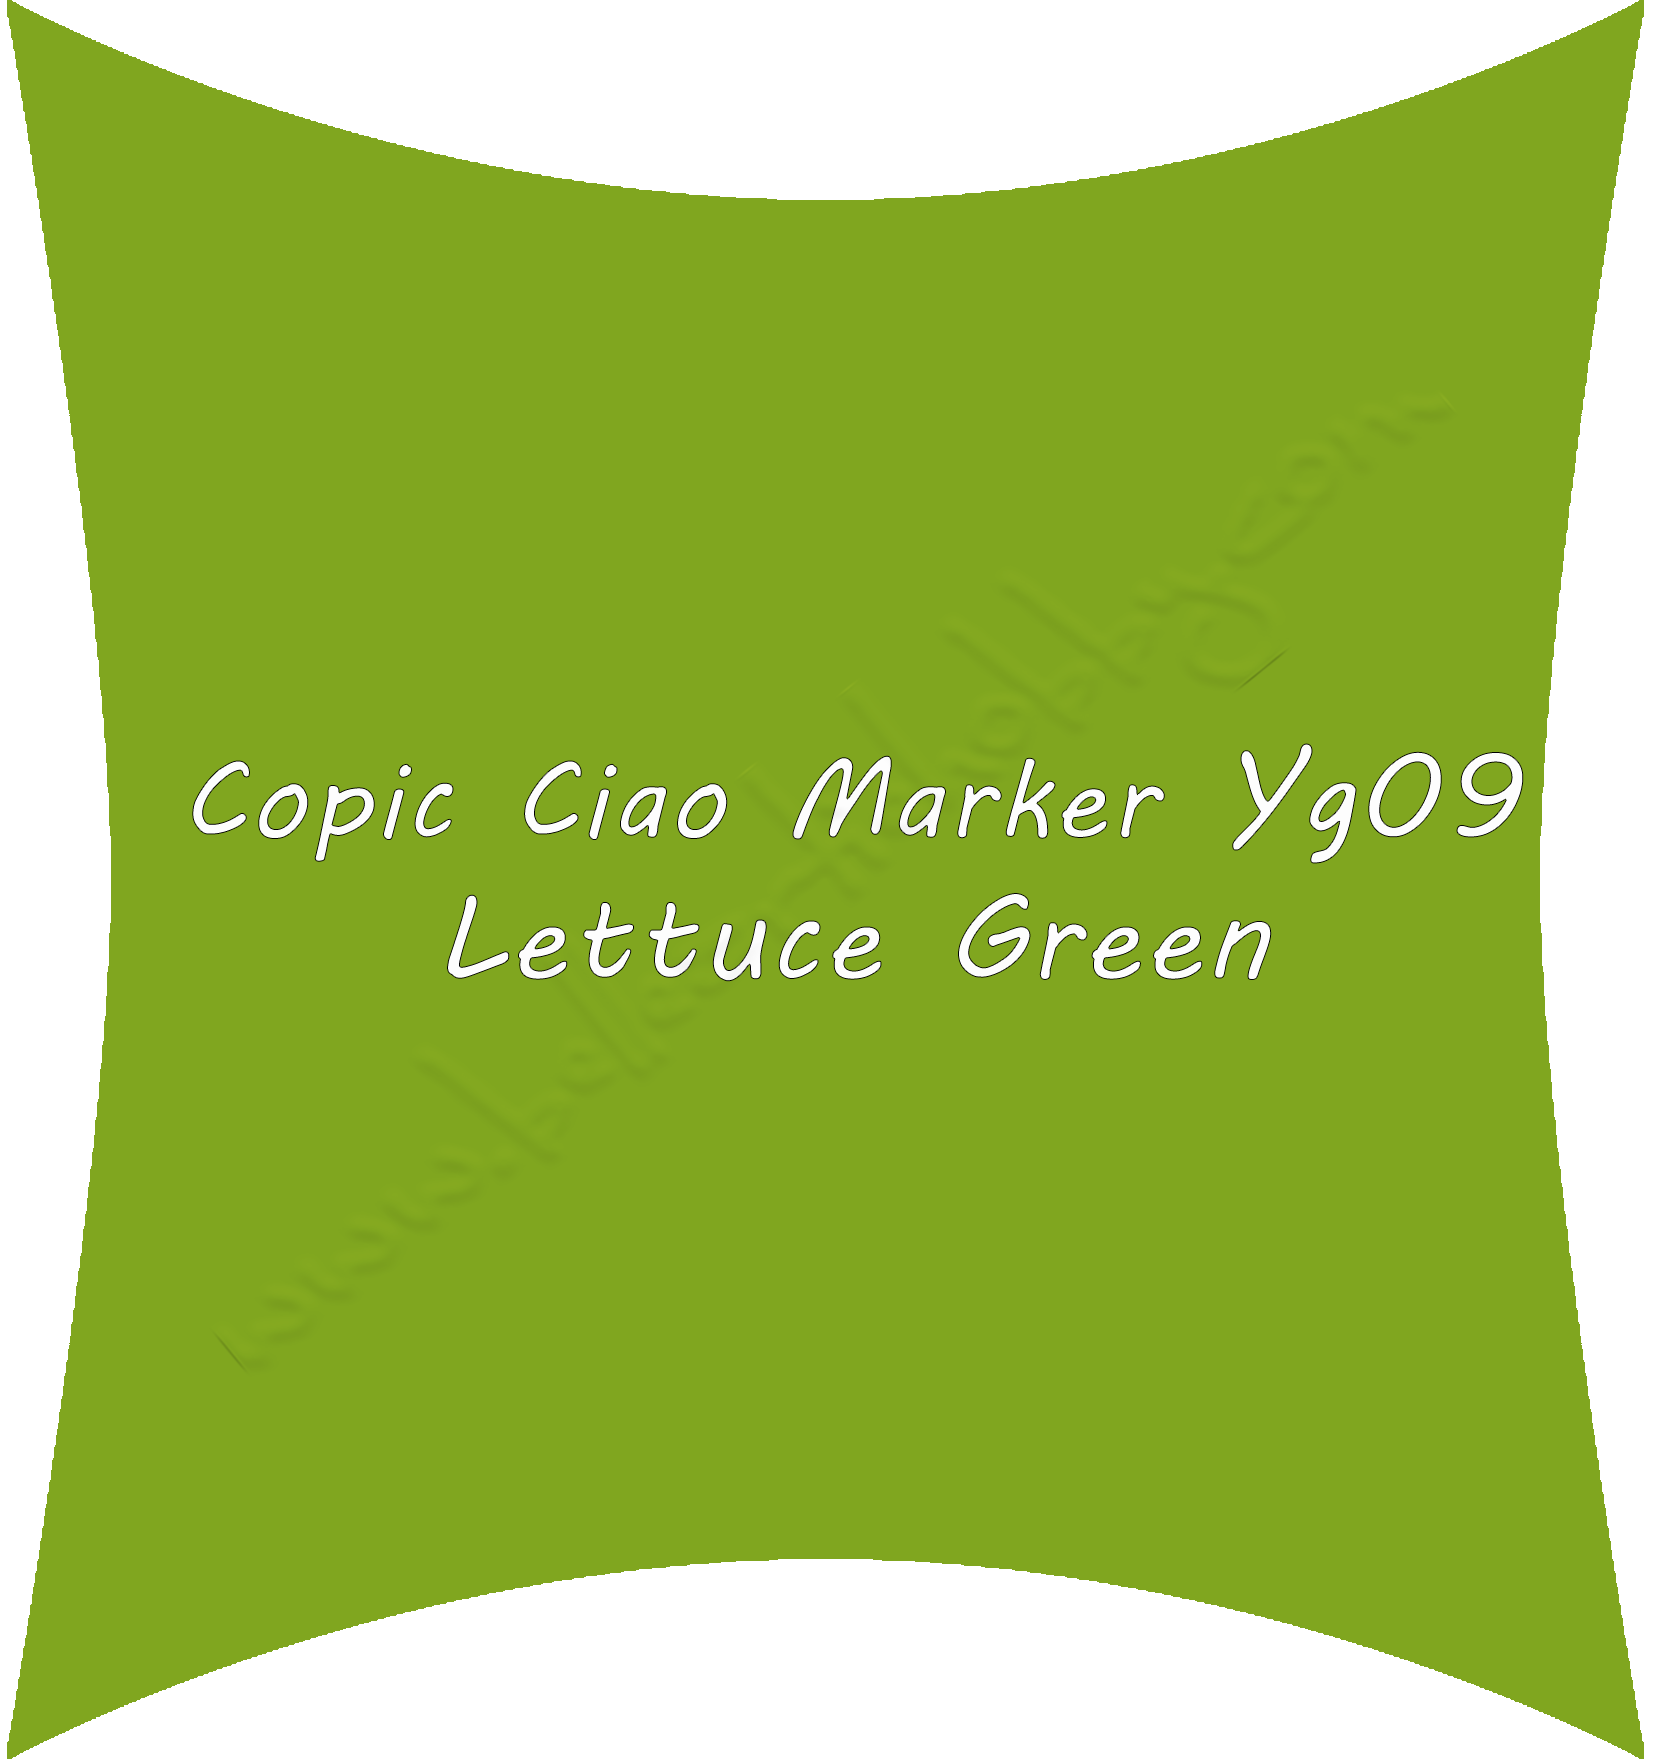 Yg09 Lettuce Green